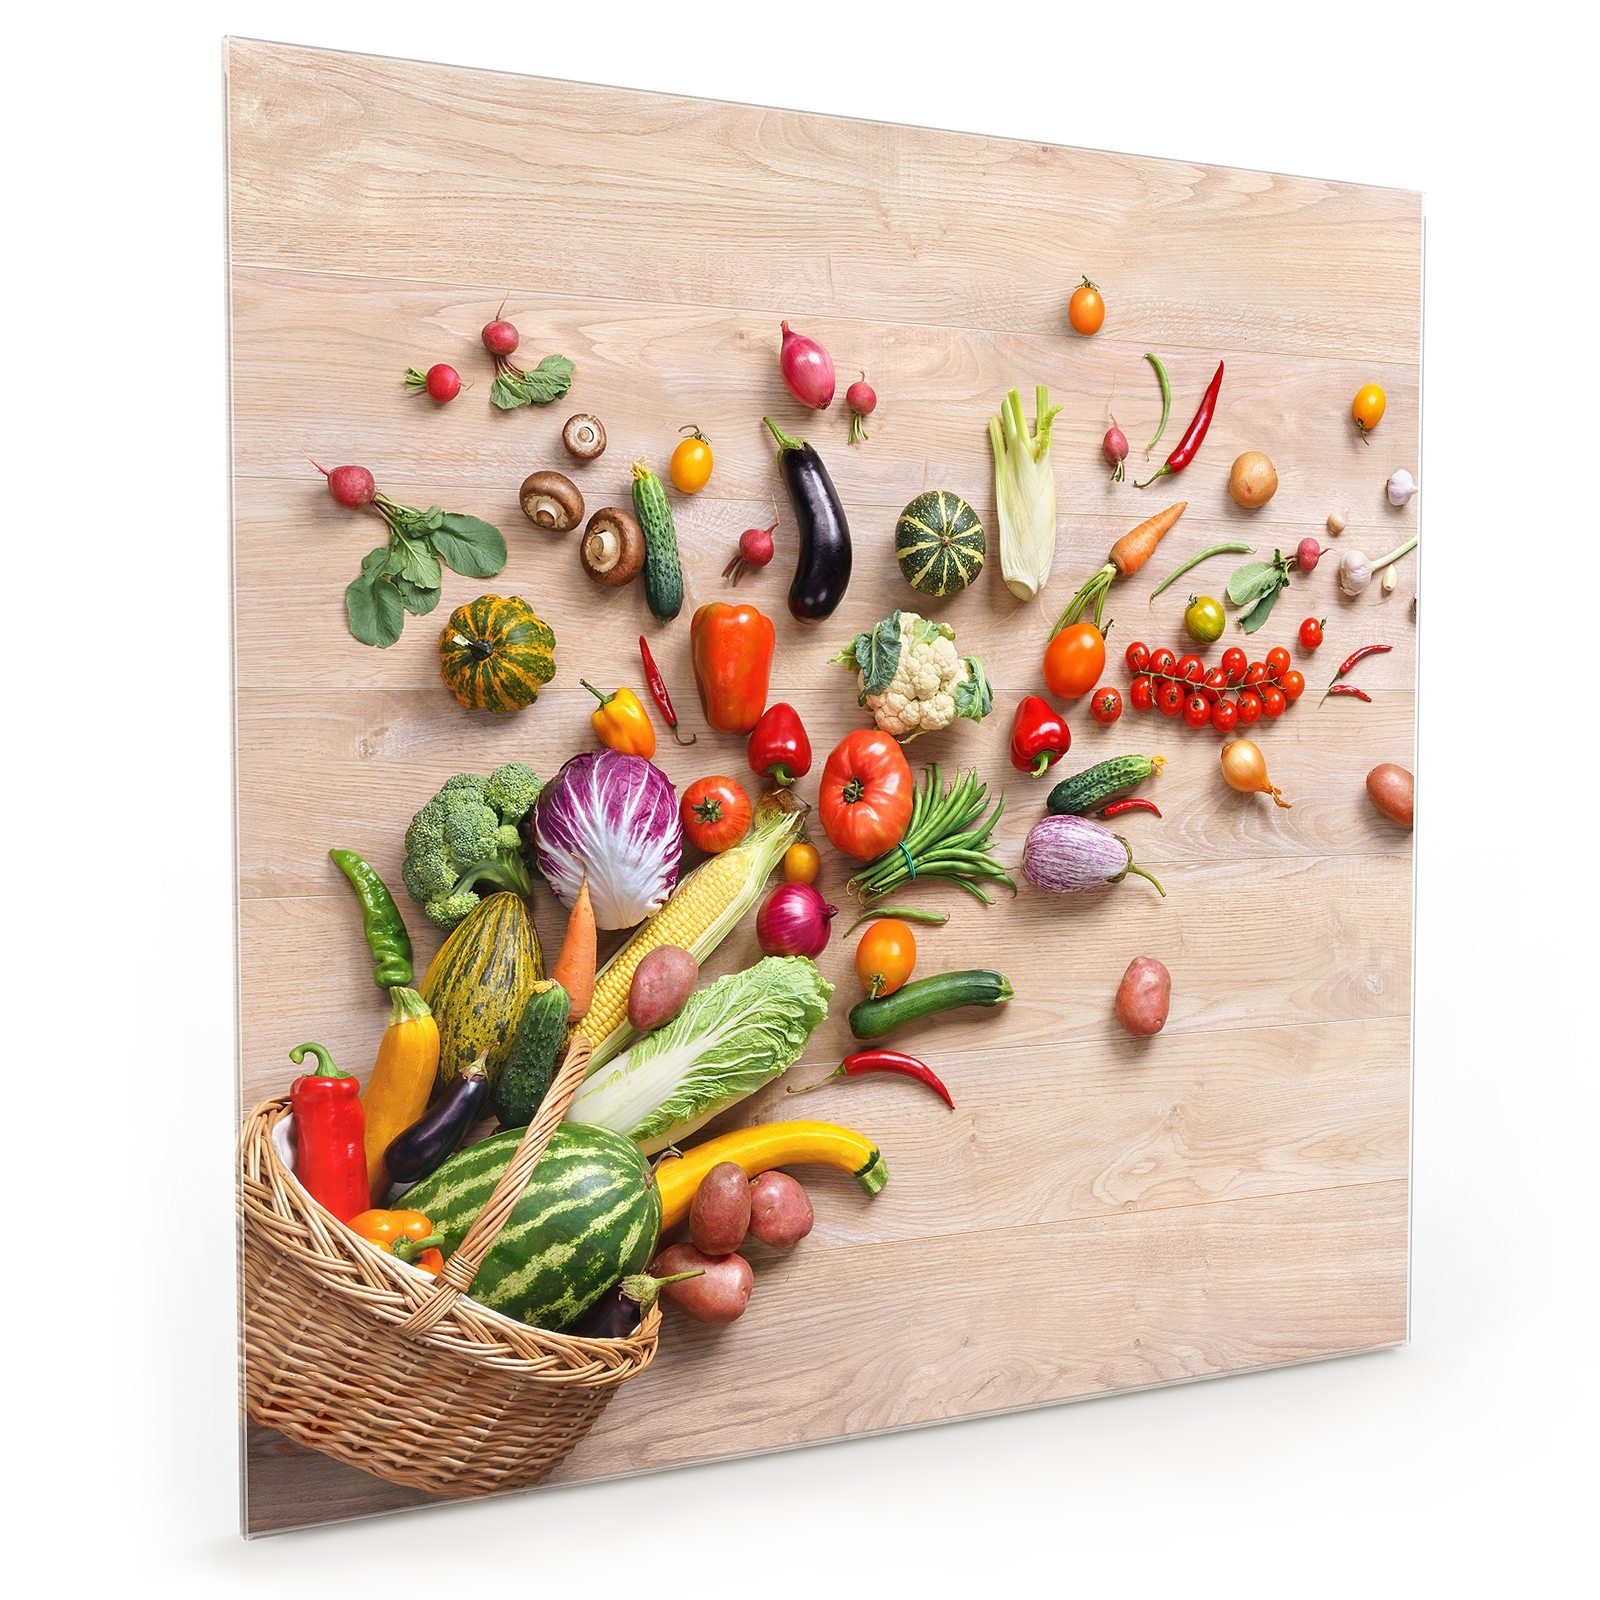 Küchenrückwand mit Spritzschutz Primedeco Küchenrückwand Glas Korb aus Motiv fallend Gemüse